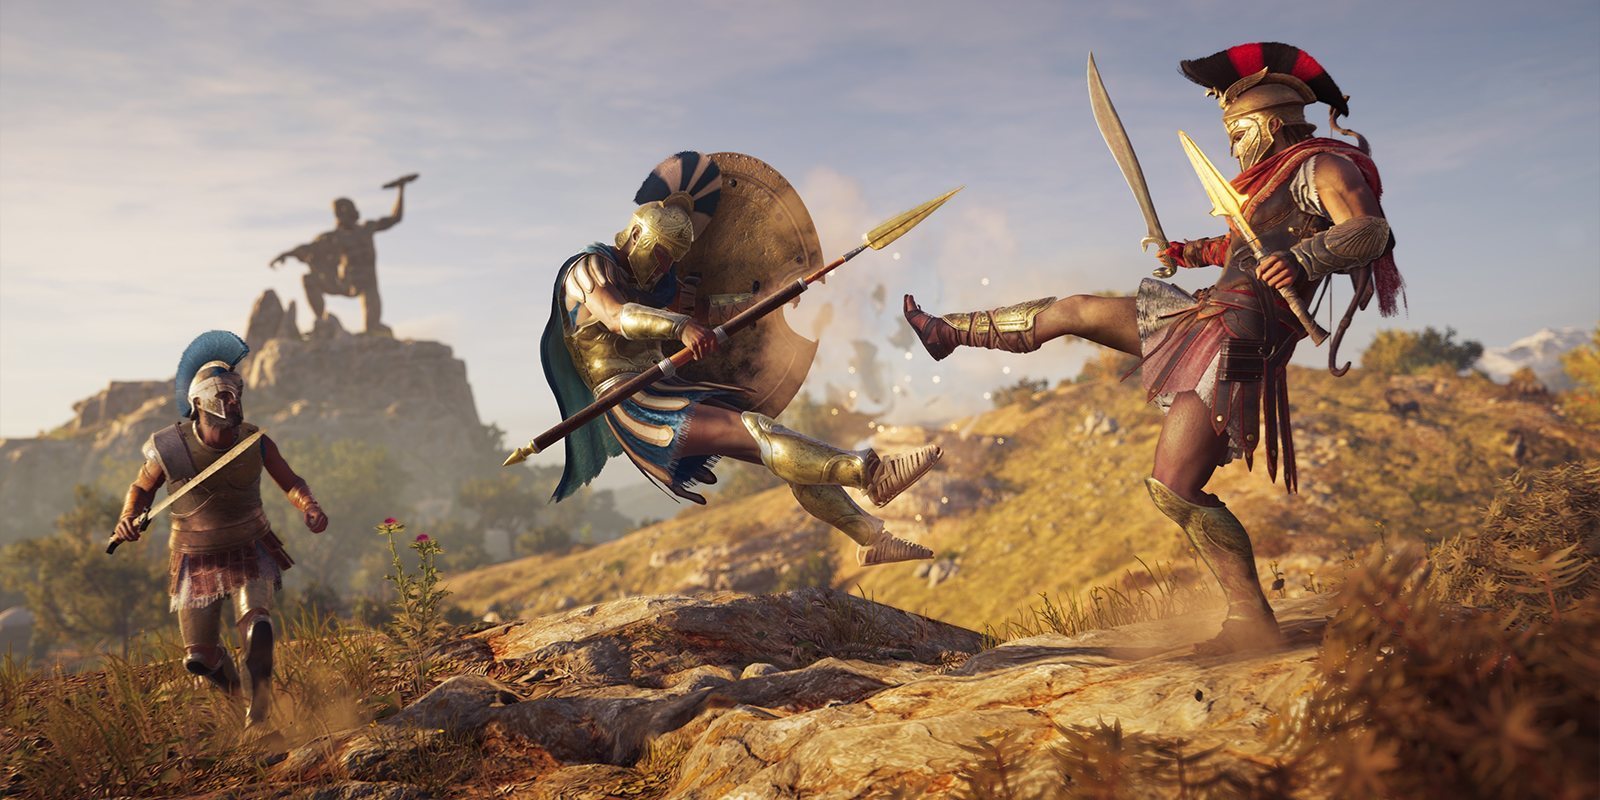 El sistema de combate de 'Assassin's Creed Odyssey' se adaptará a nuestro estilo de lucha